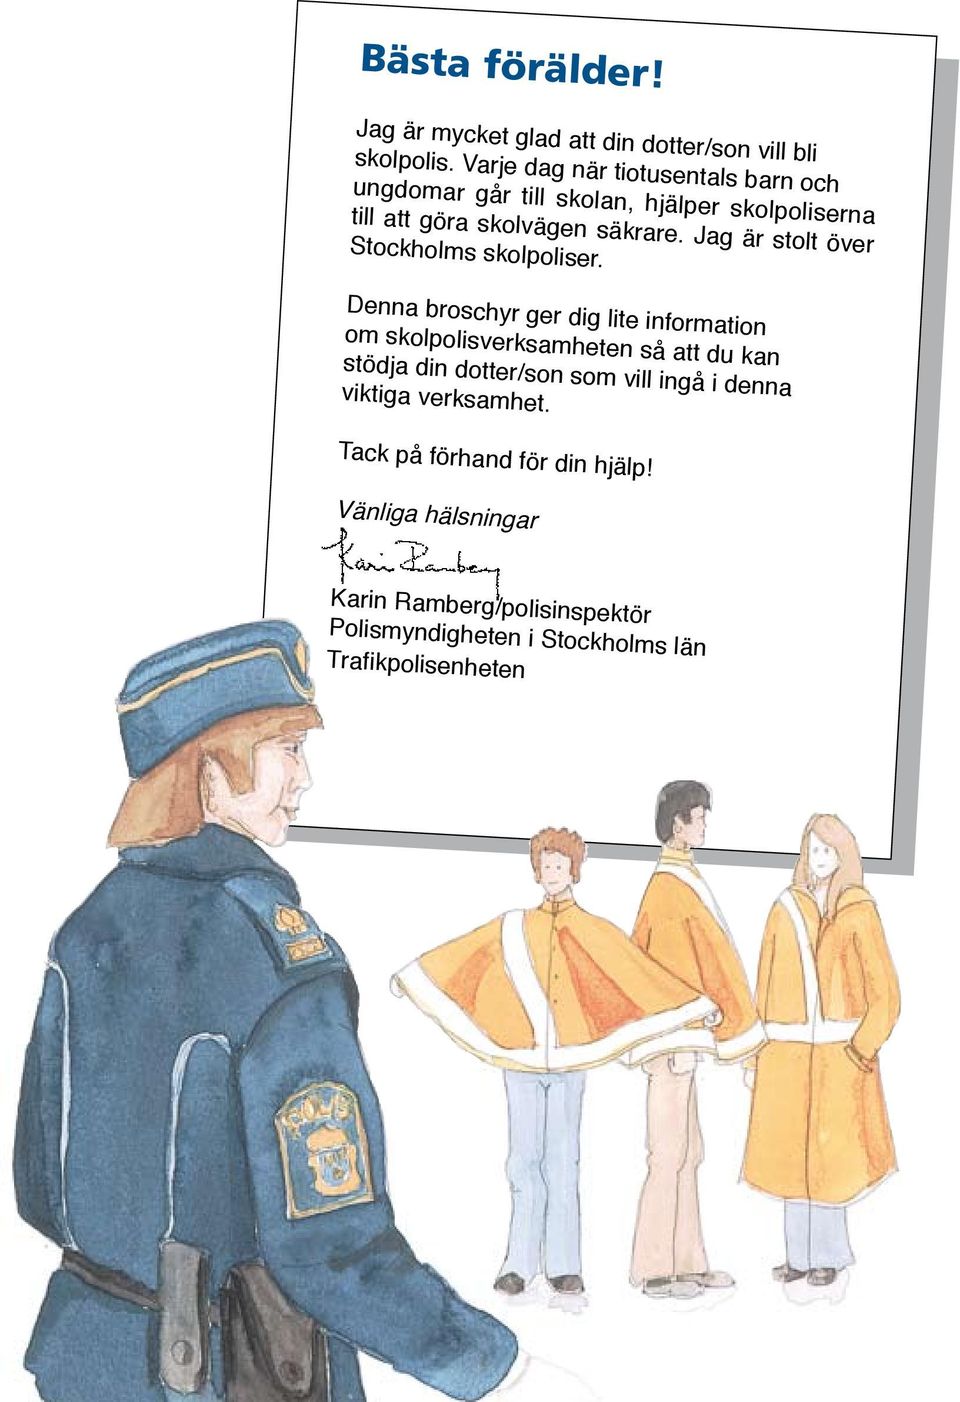 Jag är stolt över Stockholms skolpoliser.